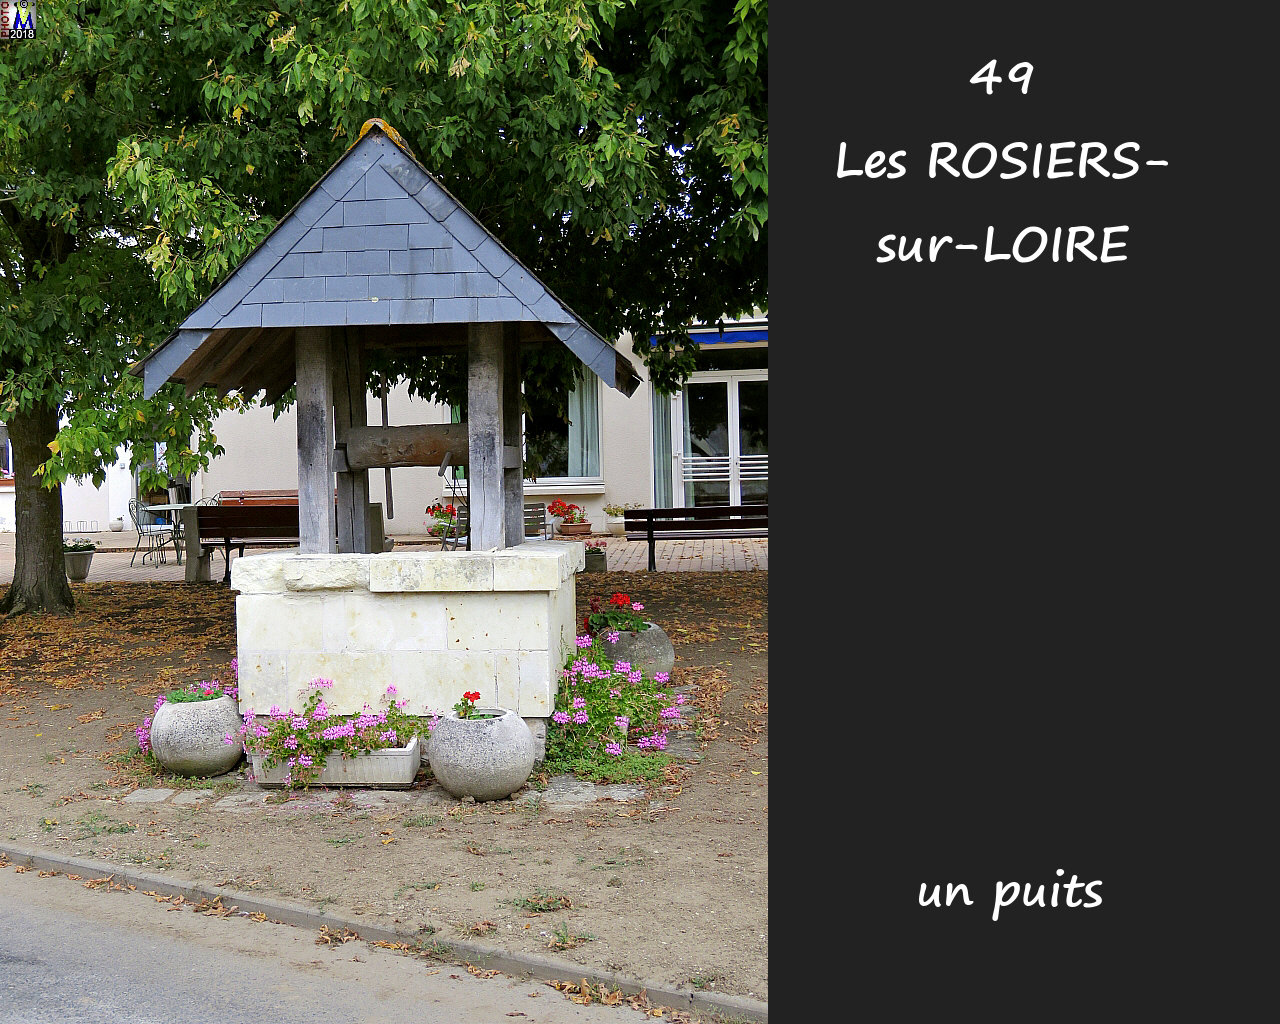 49ROSIERS-LOIRE_puits_1000.jpg